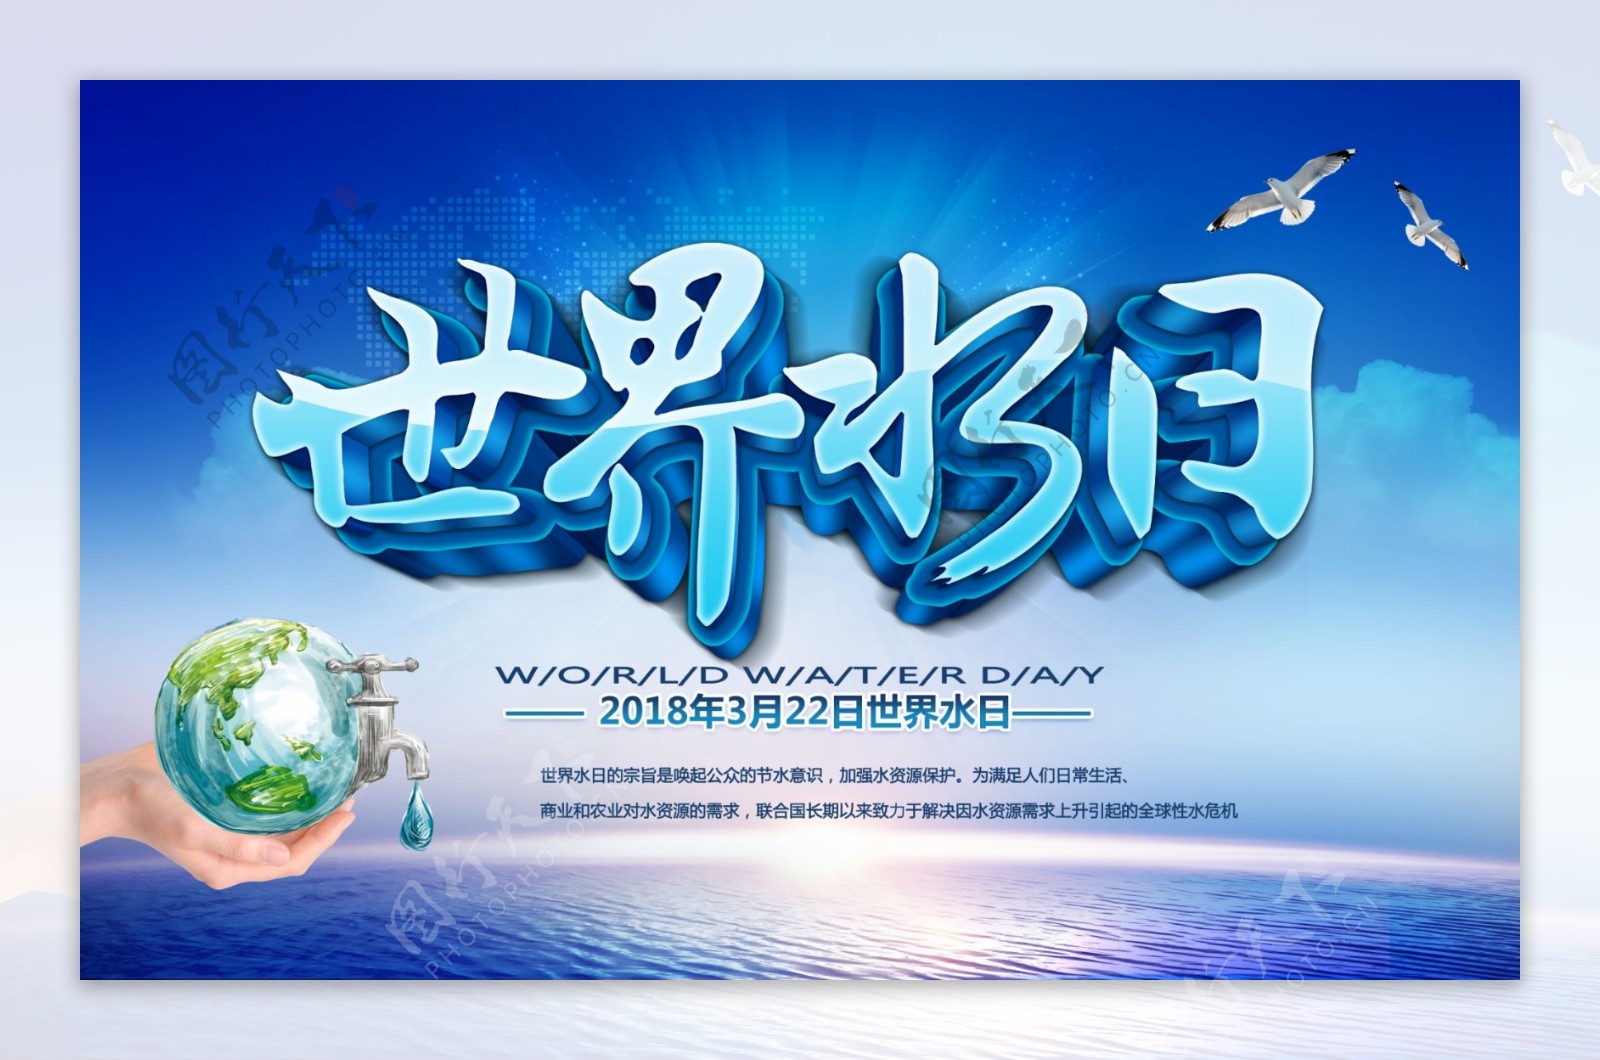 蓝色生态世界水日宣传海报素材